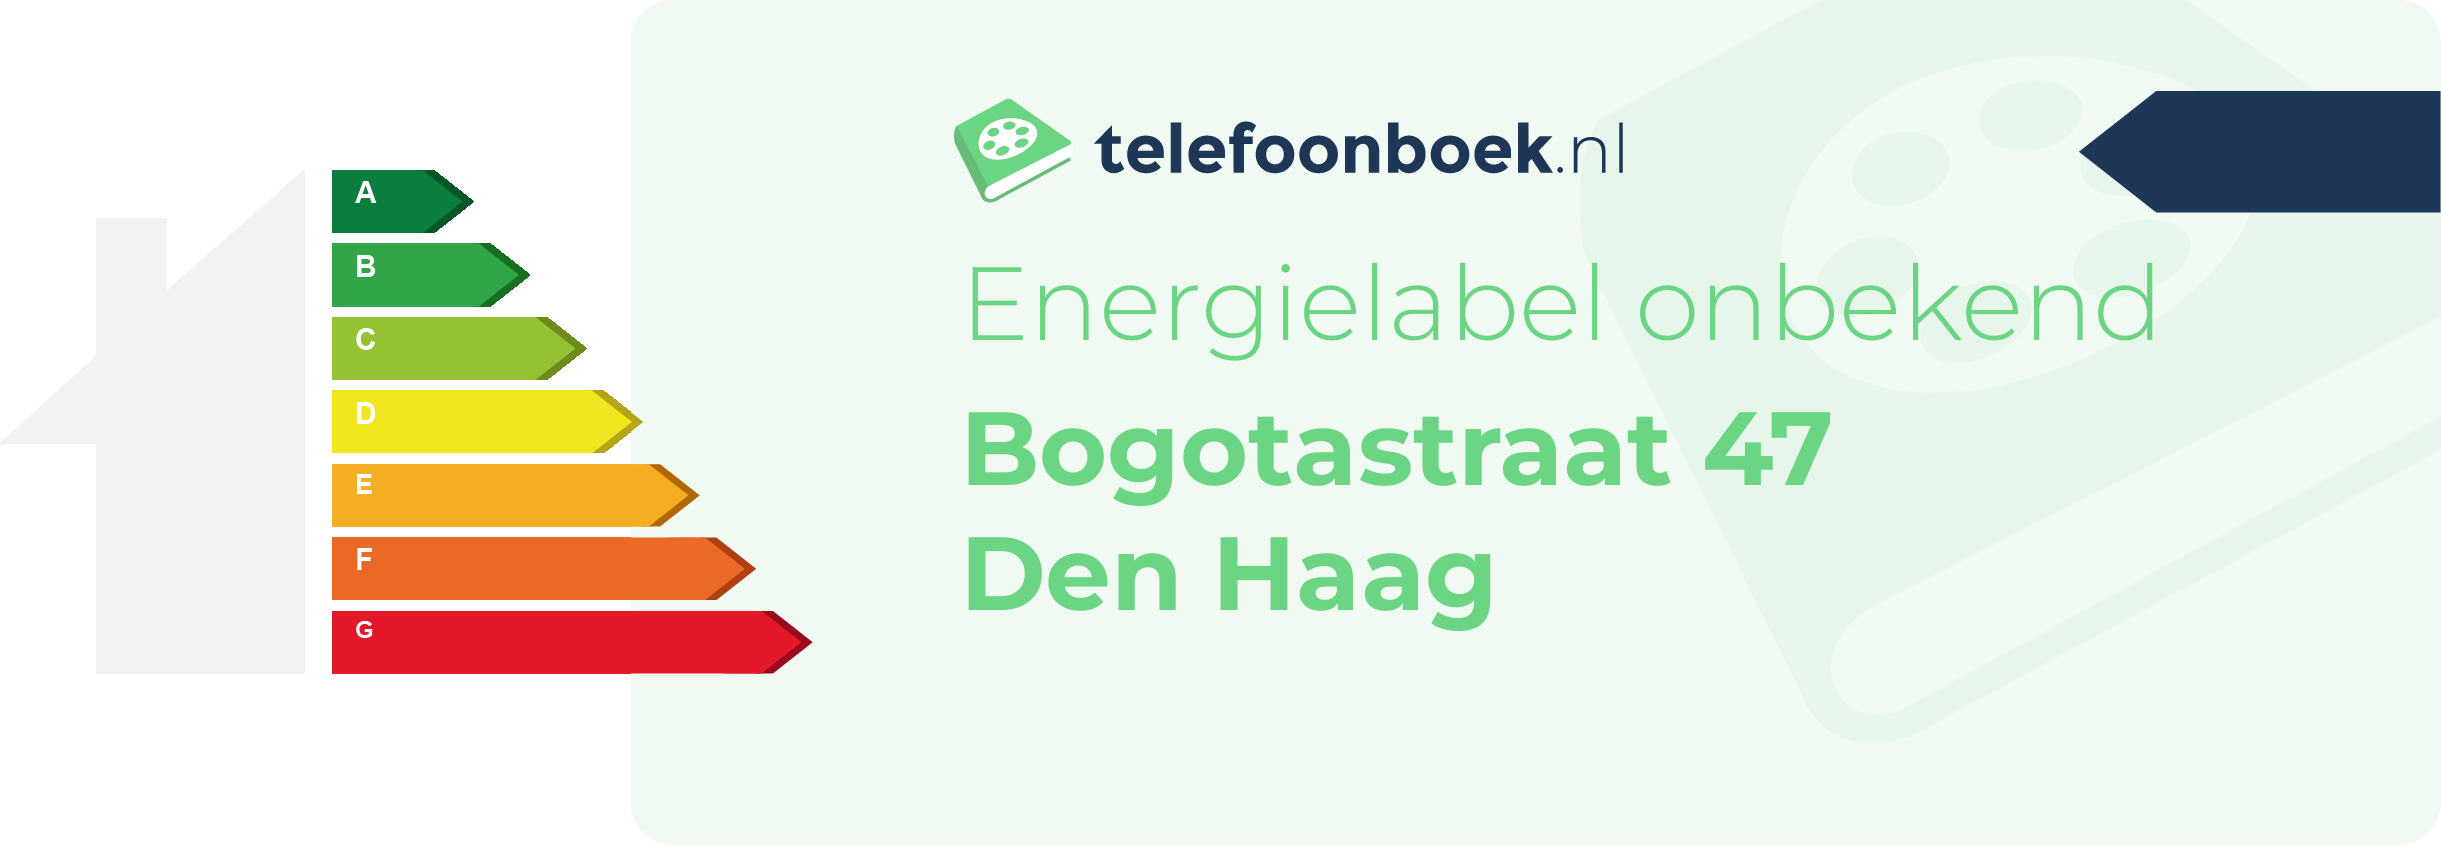 Energielabel Bogotastraat 47 Den Haag